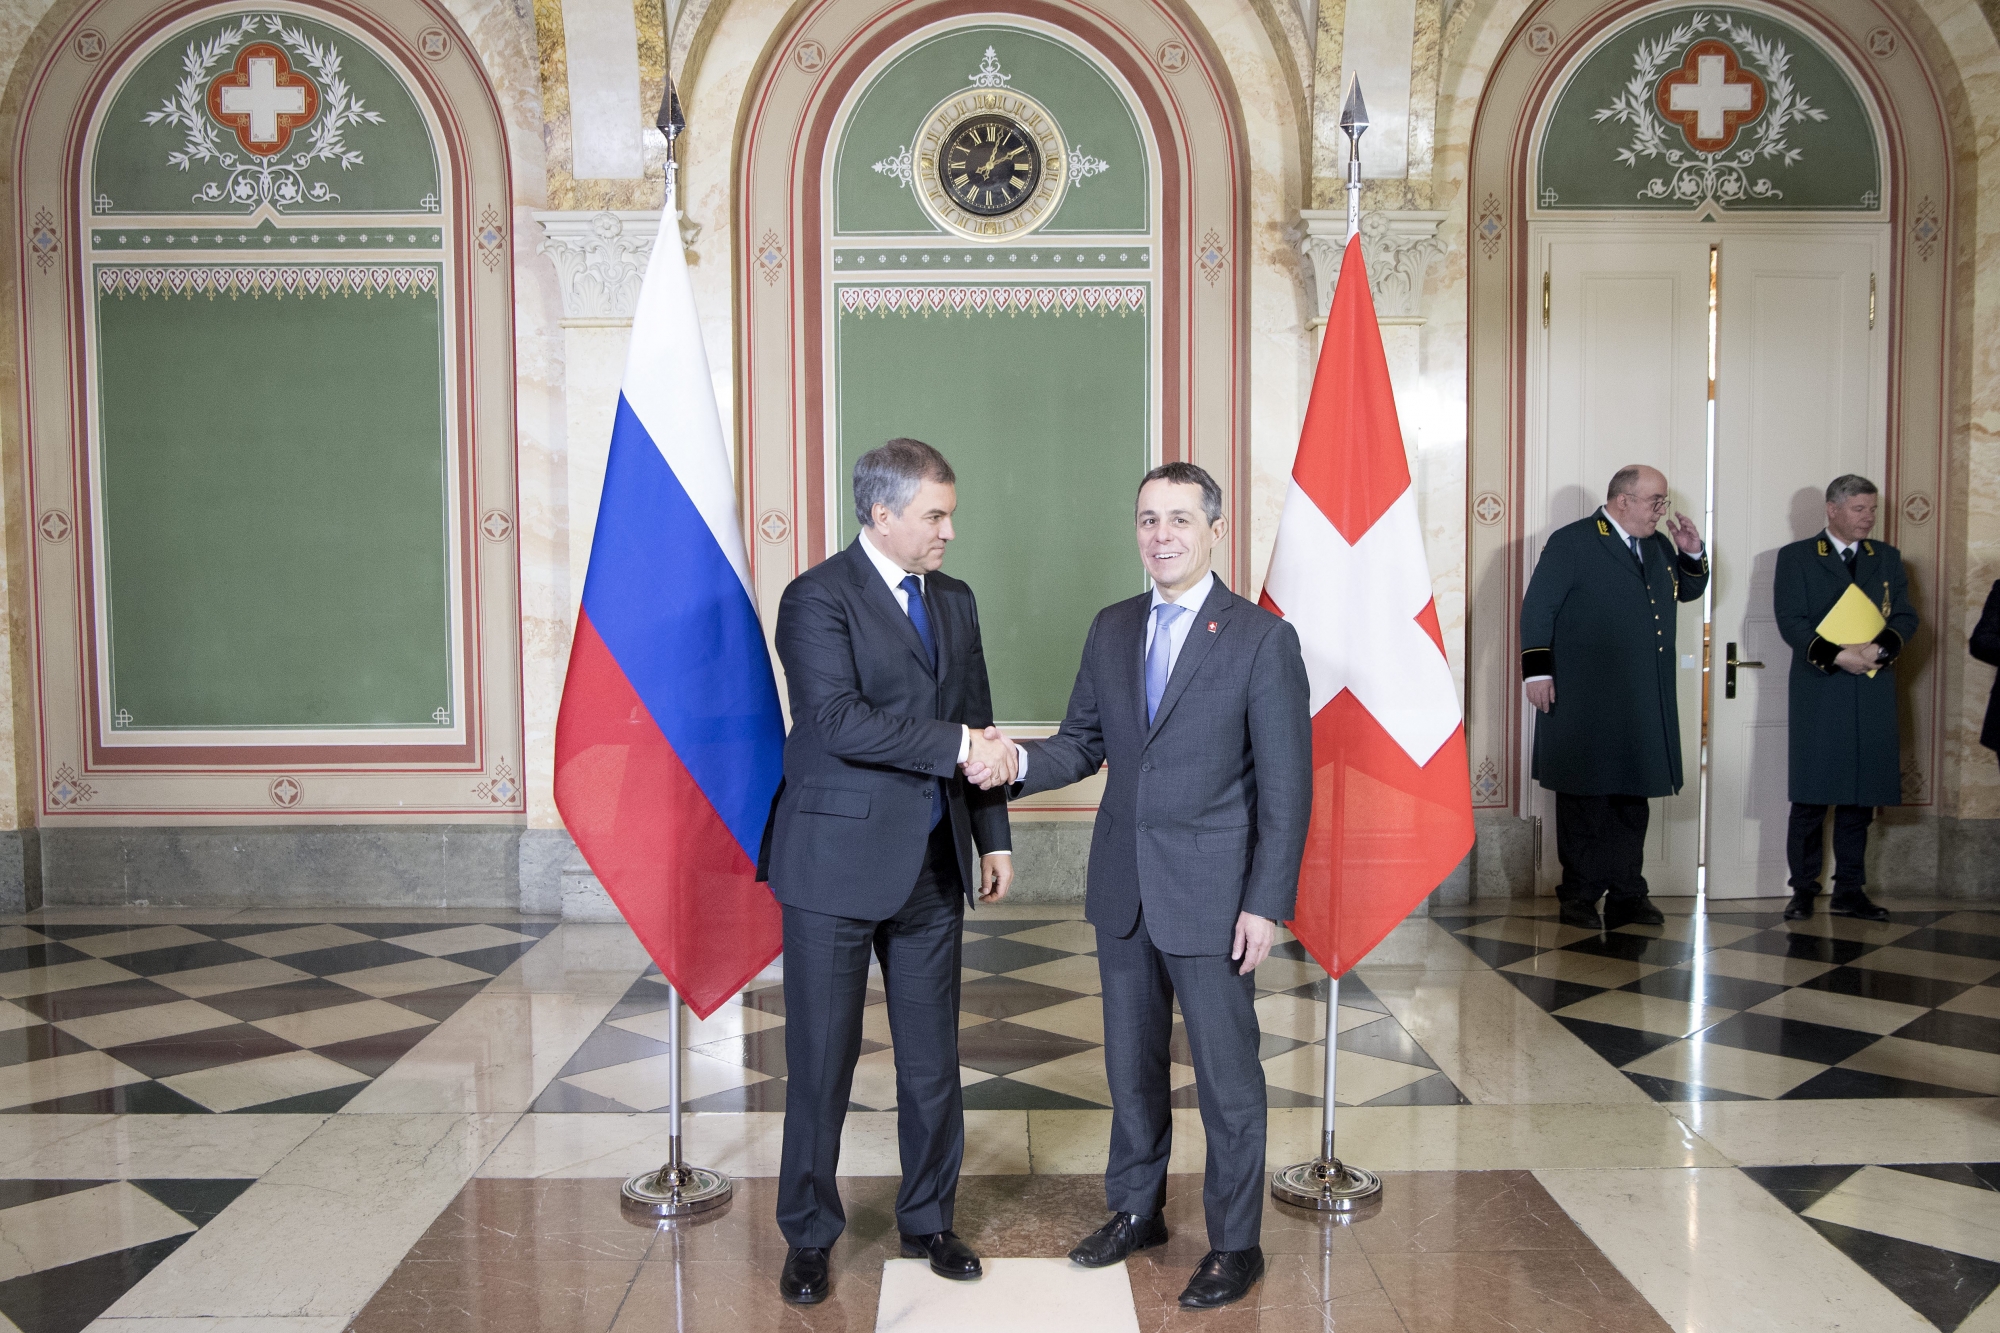 Le conseiller fédéral Ignazio Cassis a rencontré le président du Parlement russe Viatcheslav Volodine lundi dernier au Palais fédéral.